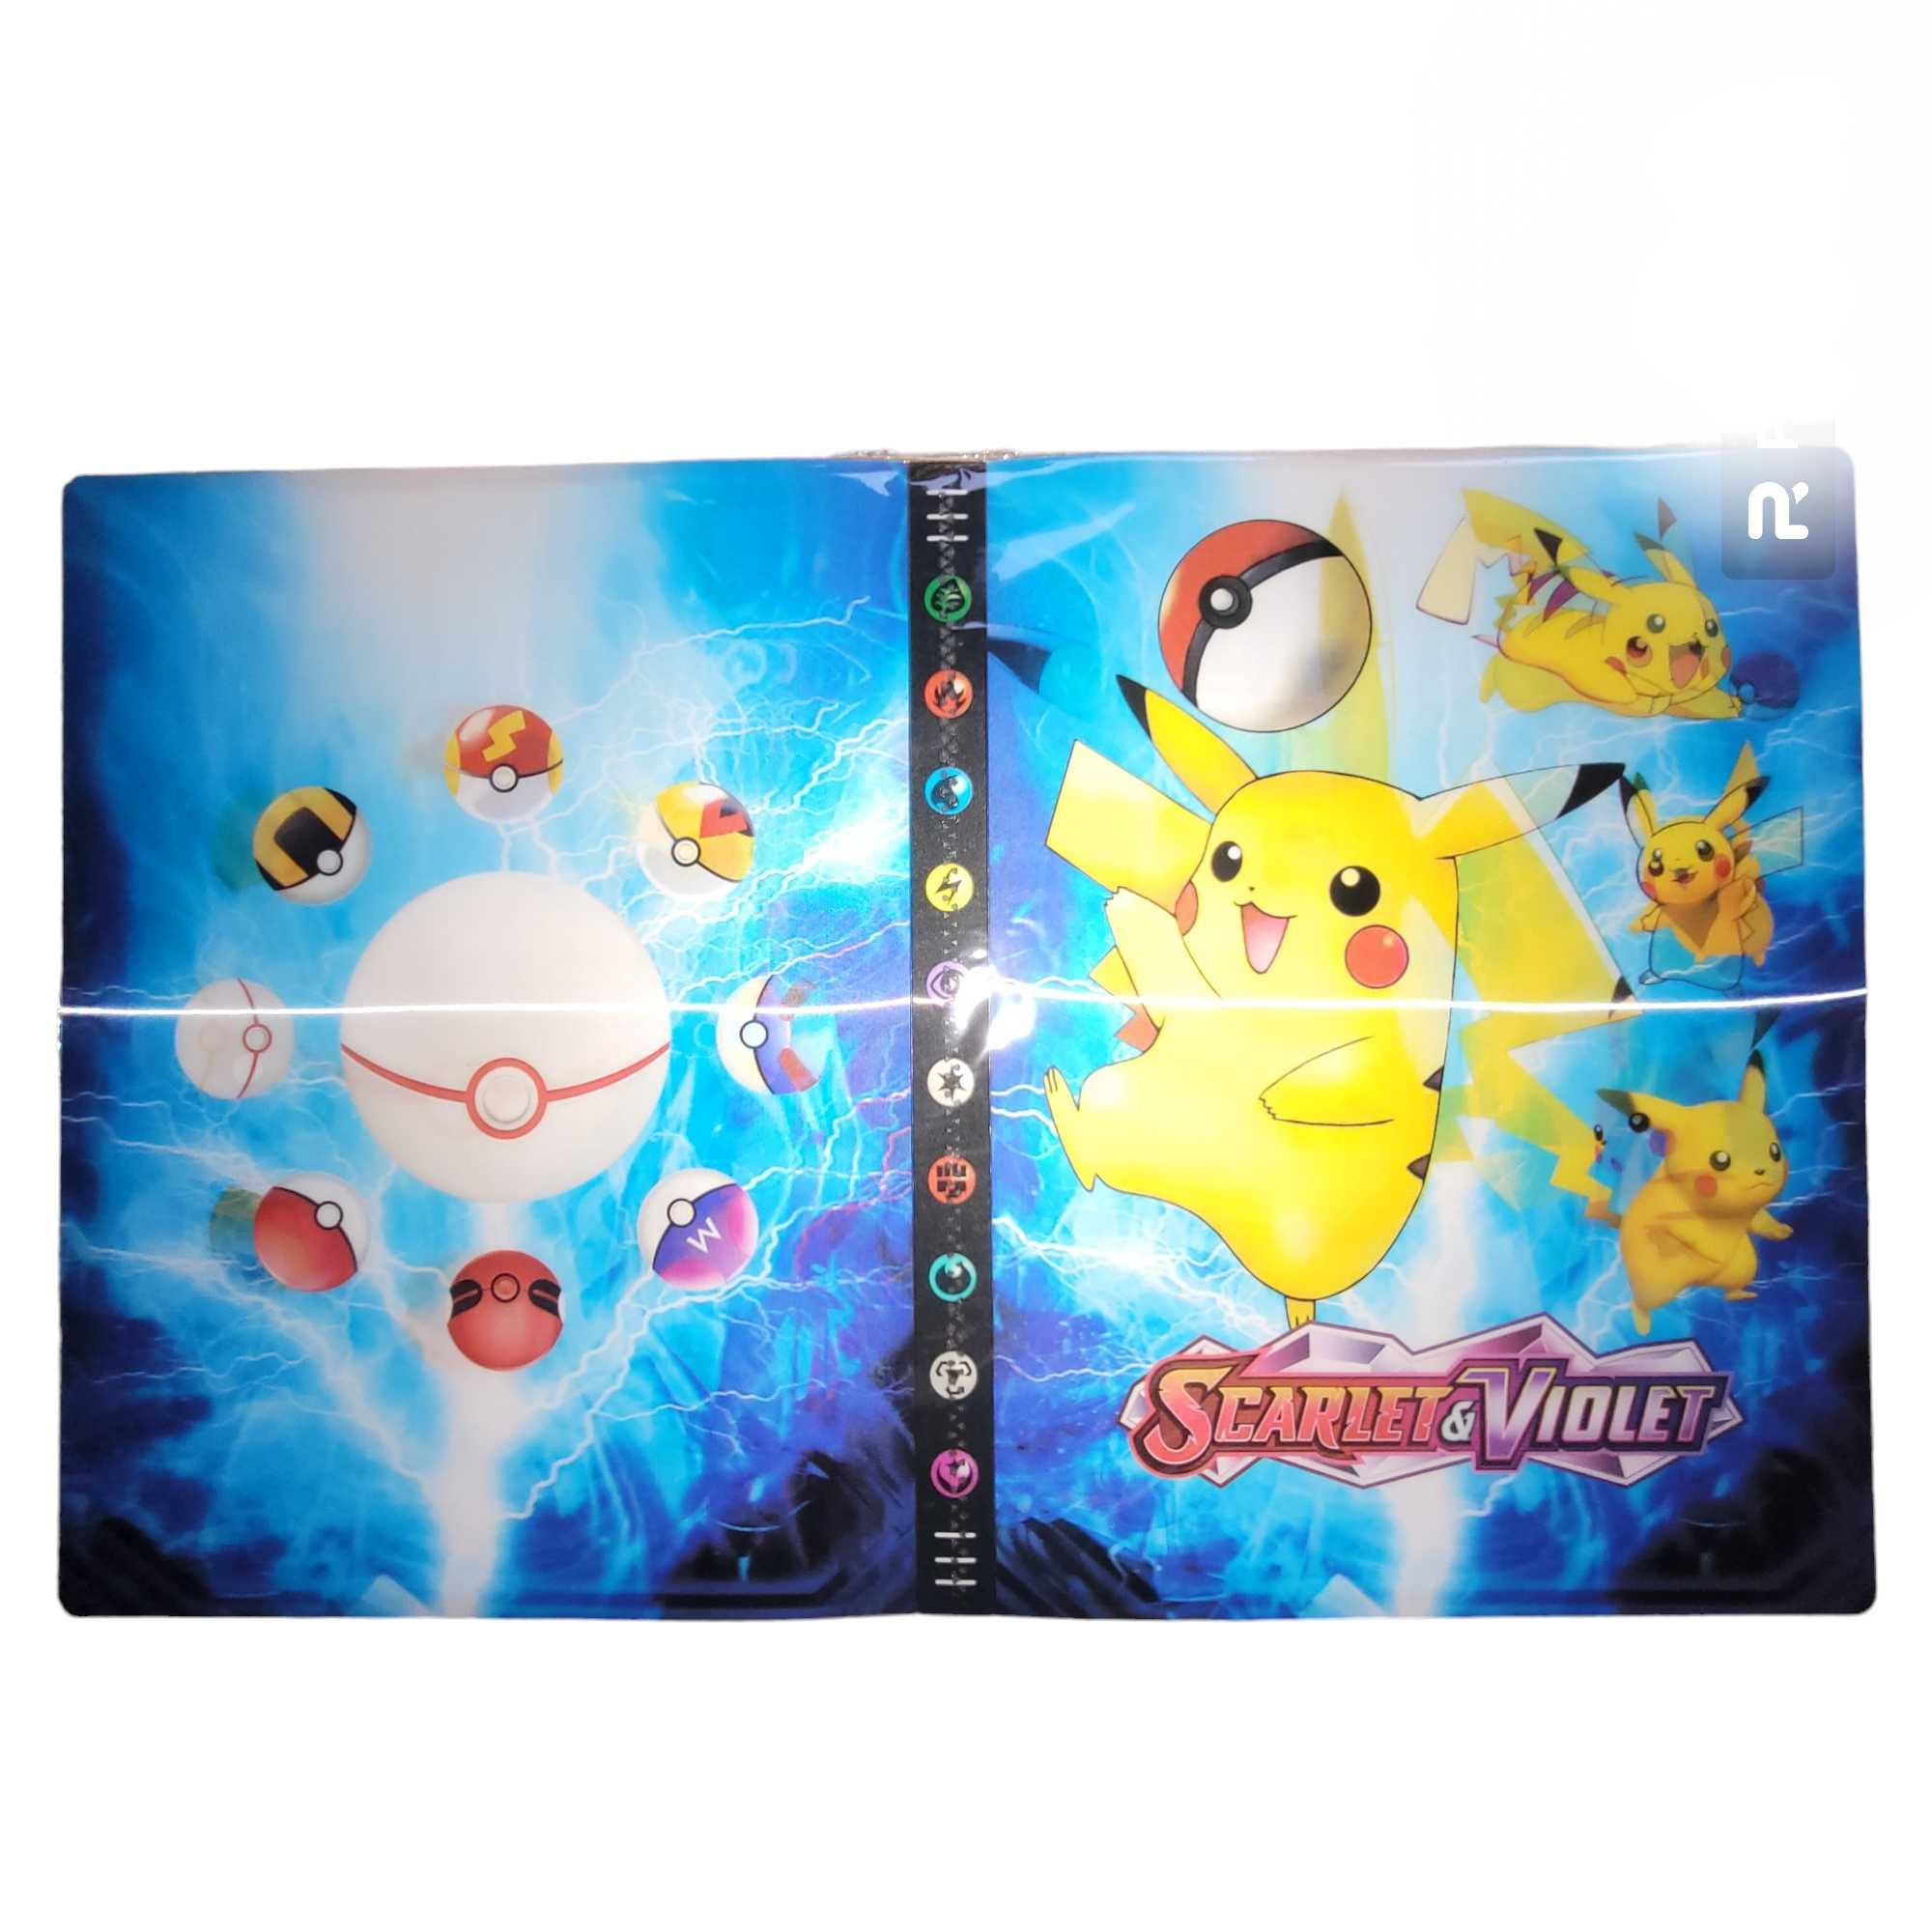 #101 Nowy duży album XXL Pokemon na 432 karty 3D